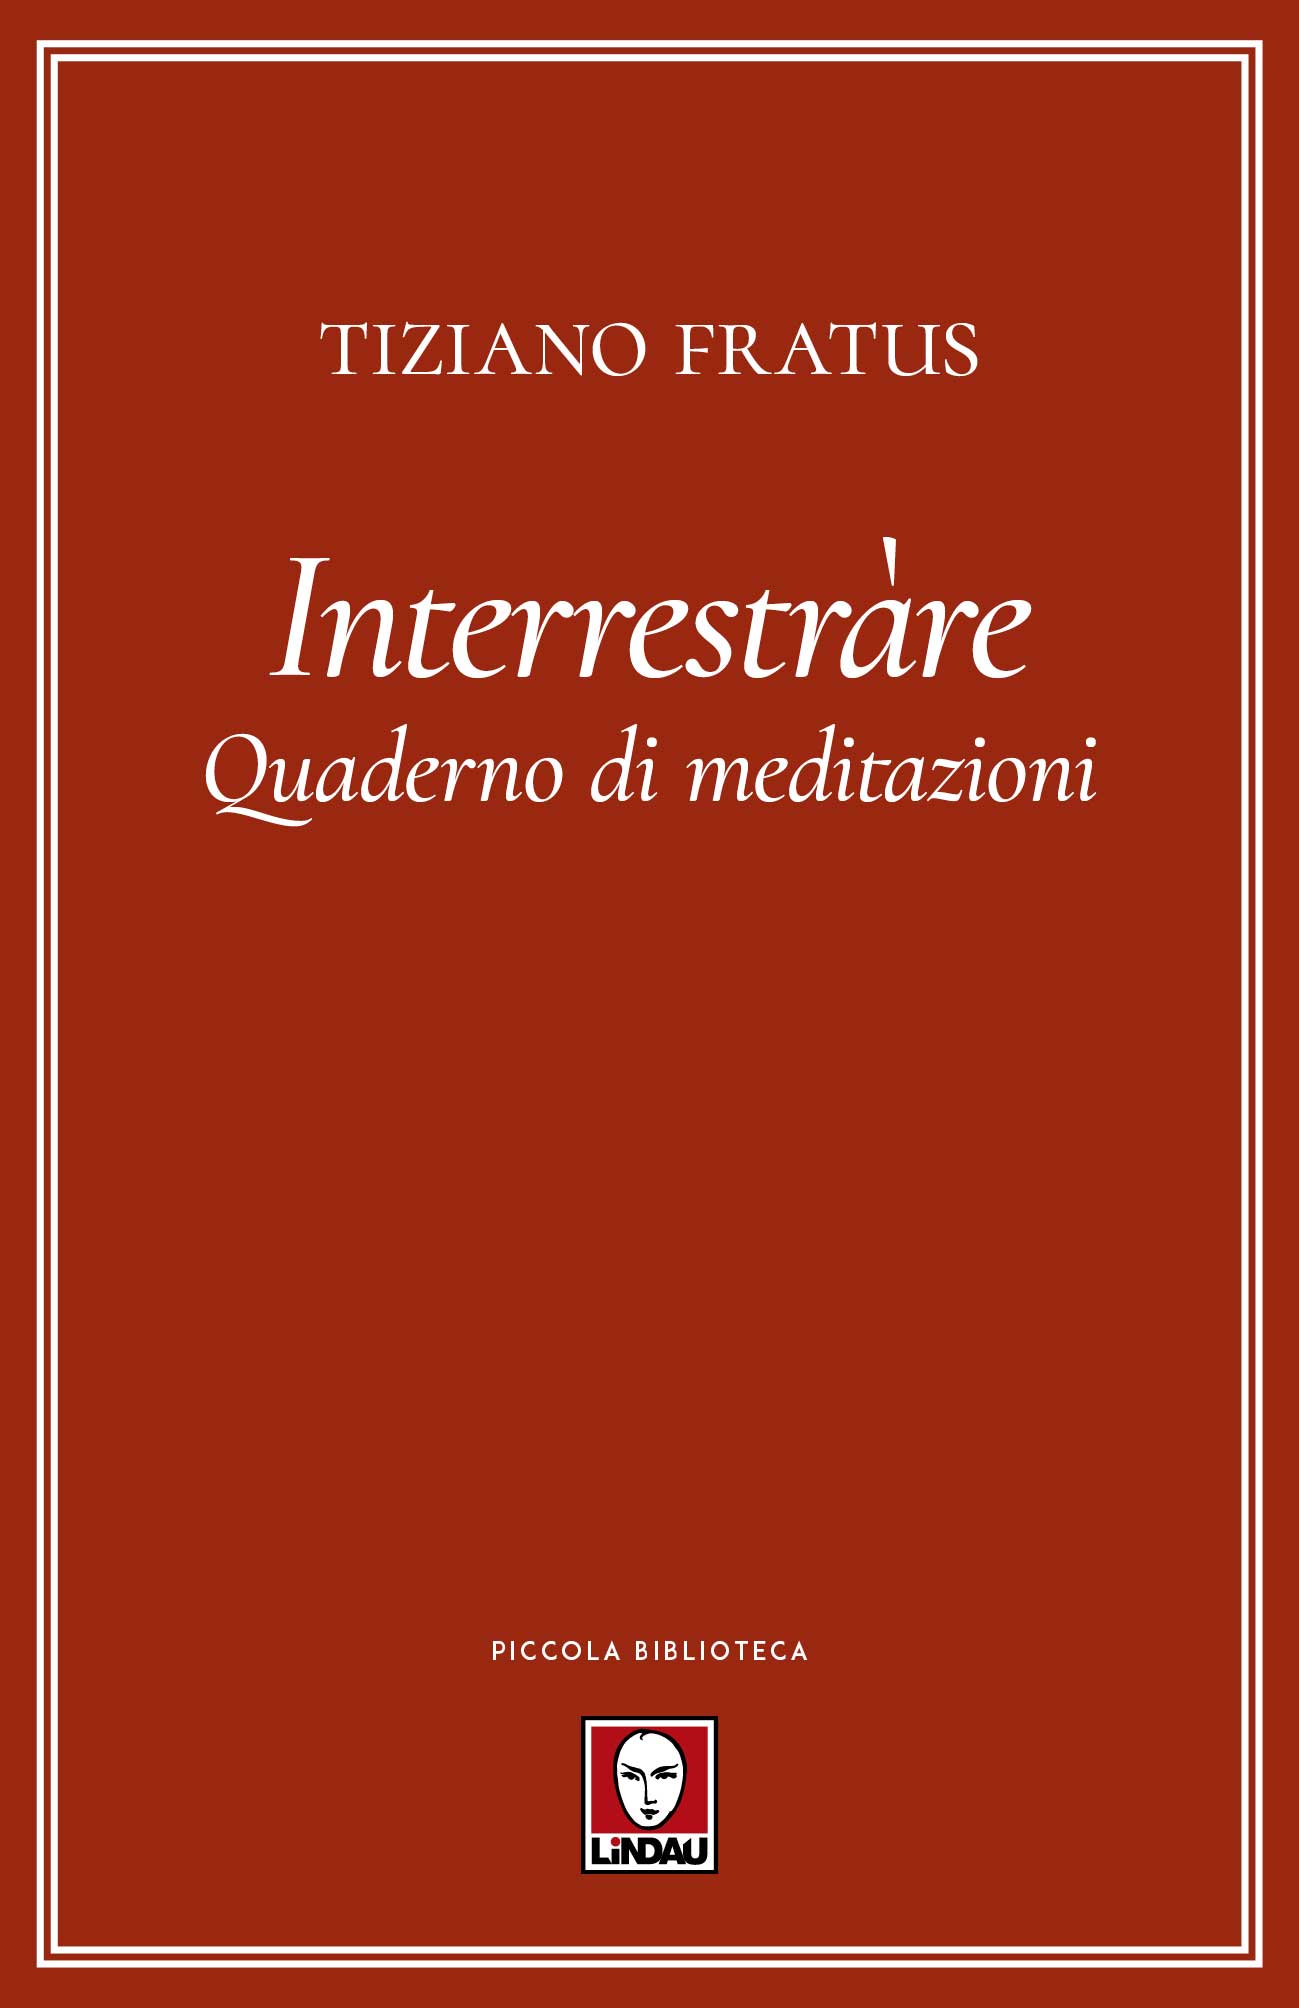 Libri Tiziano Fratus - Interrestrare. Quaderno Di Meditazioni NUOVO SIGILLATO, EDIZIONE DEL 26/09/2019 SUBITO DISPONIBILE